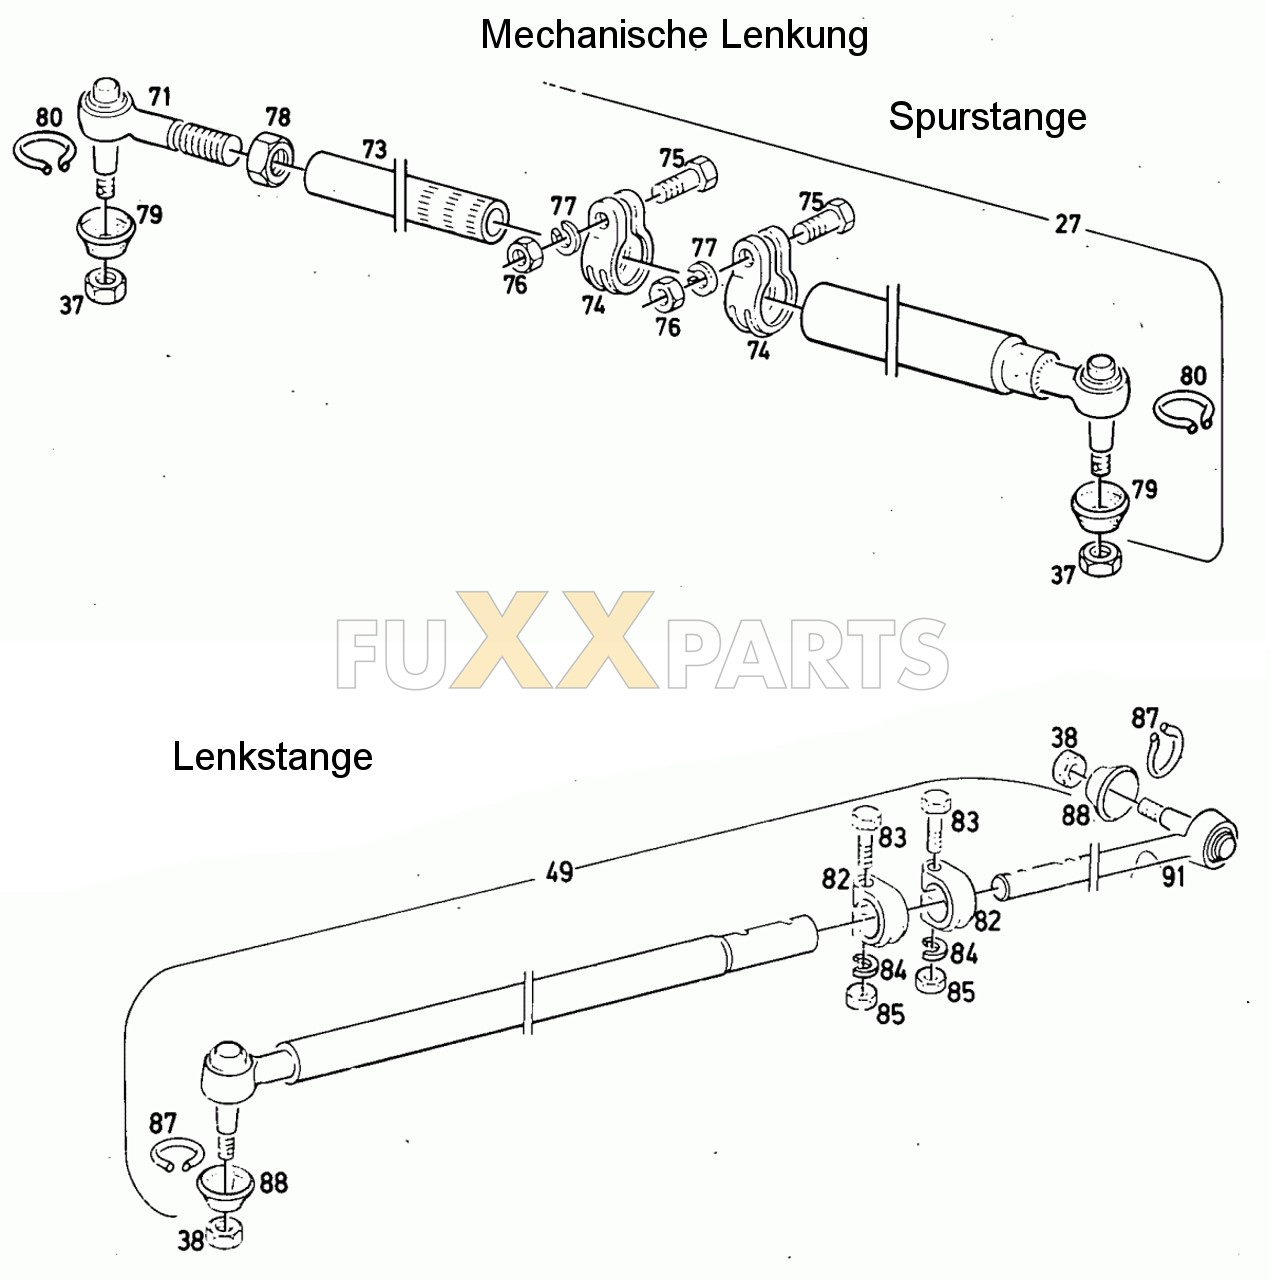 D 5206 Mechanische Lenkung Lenk und Spurstange